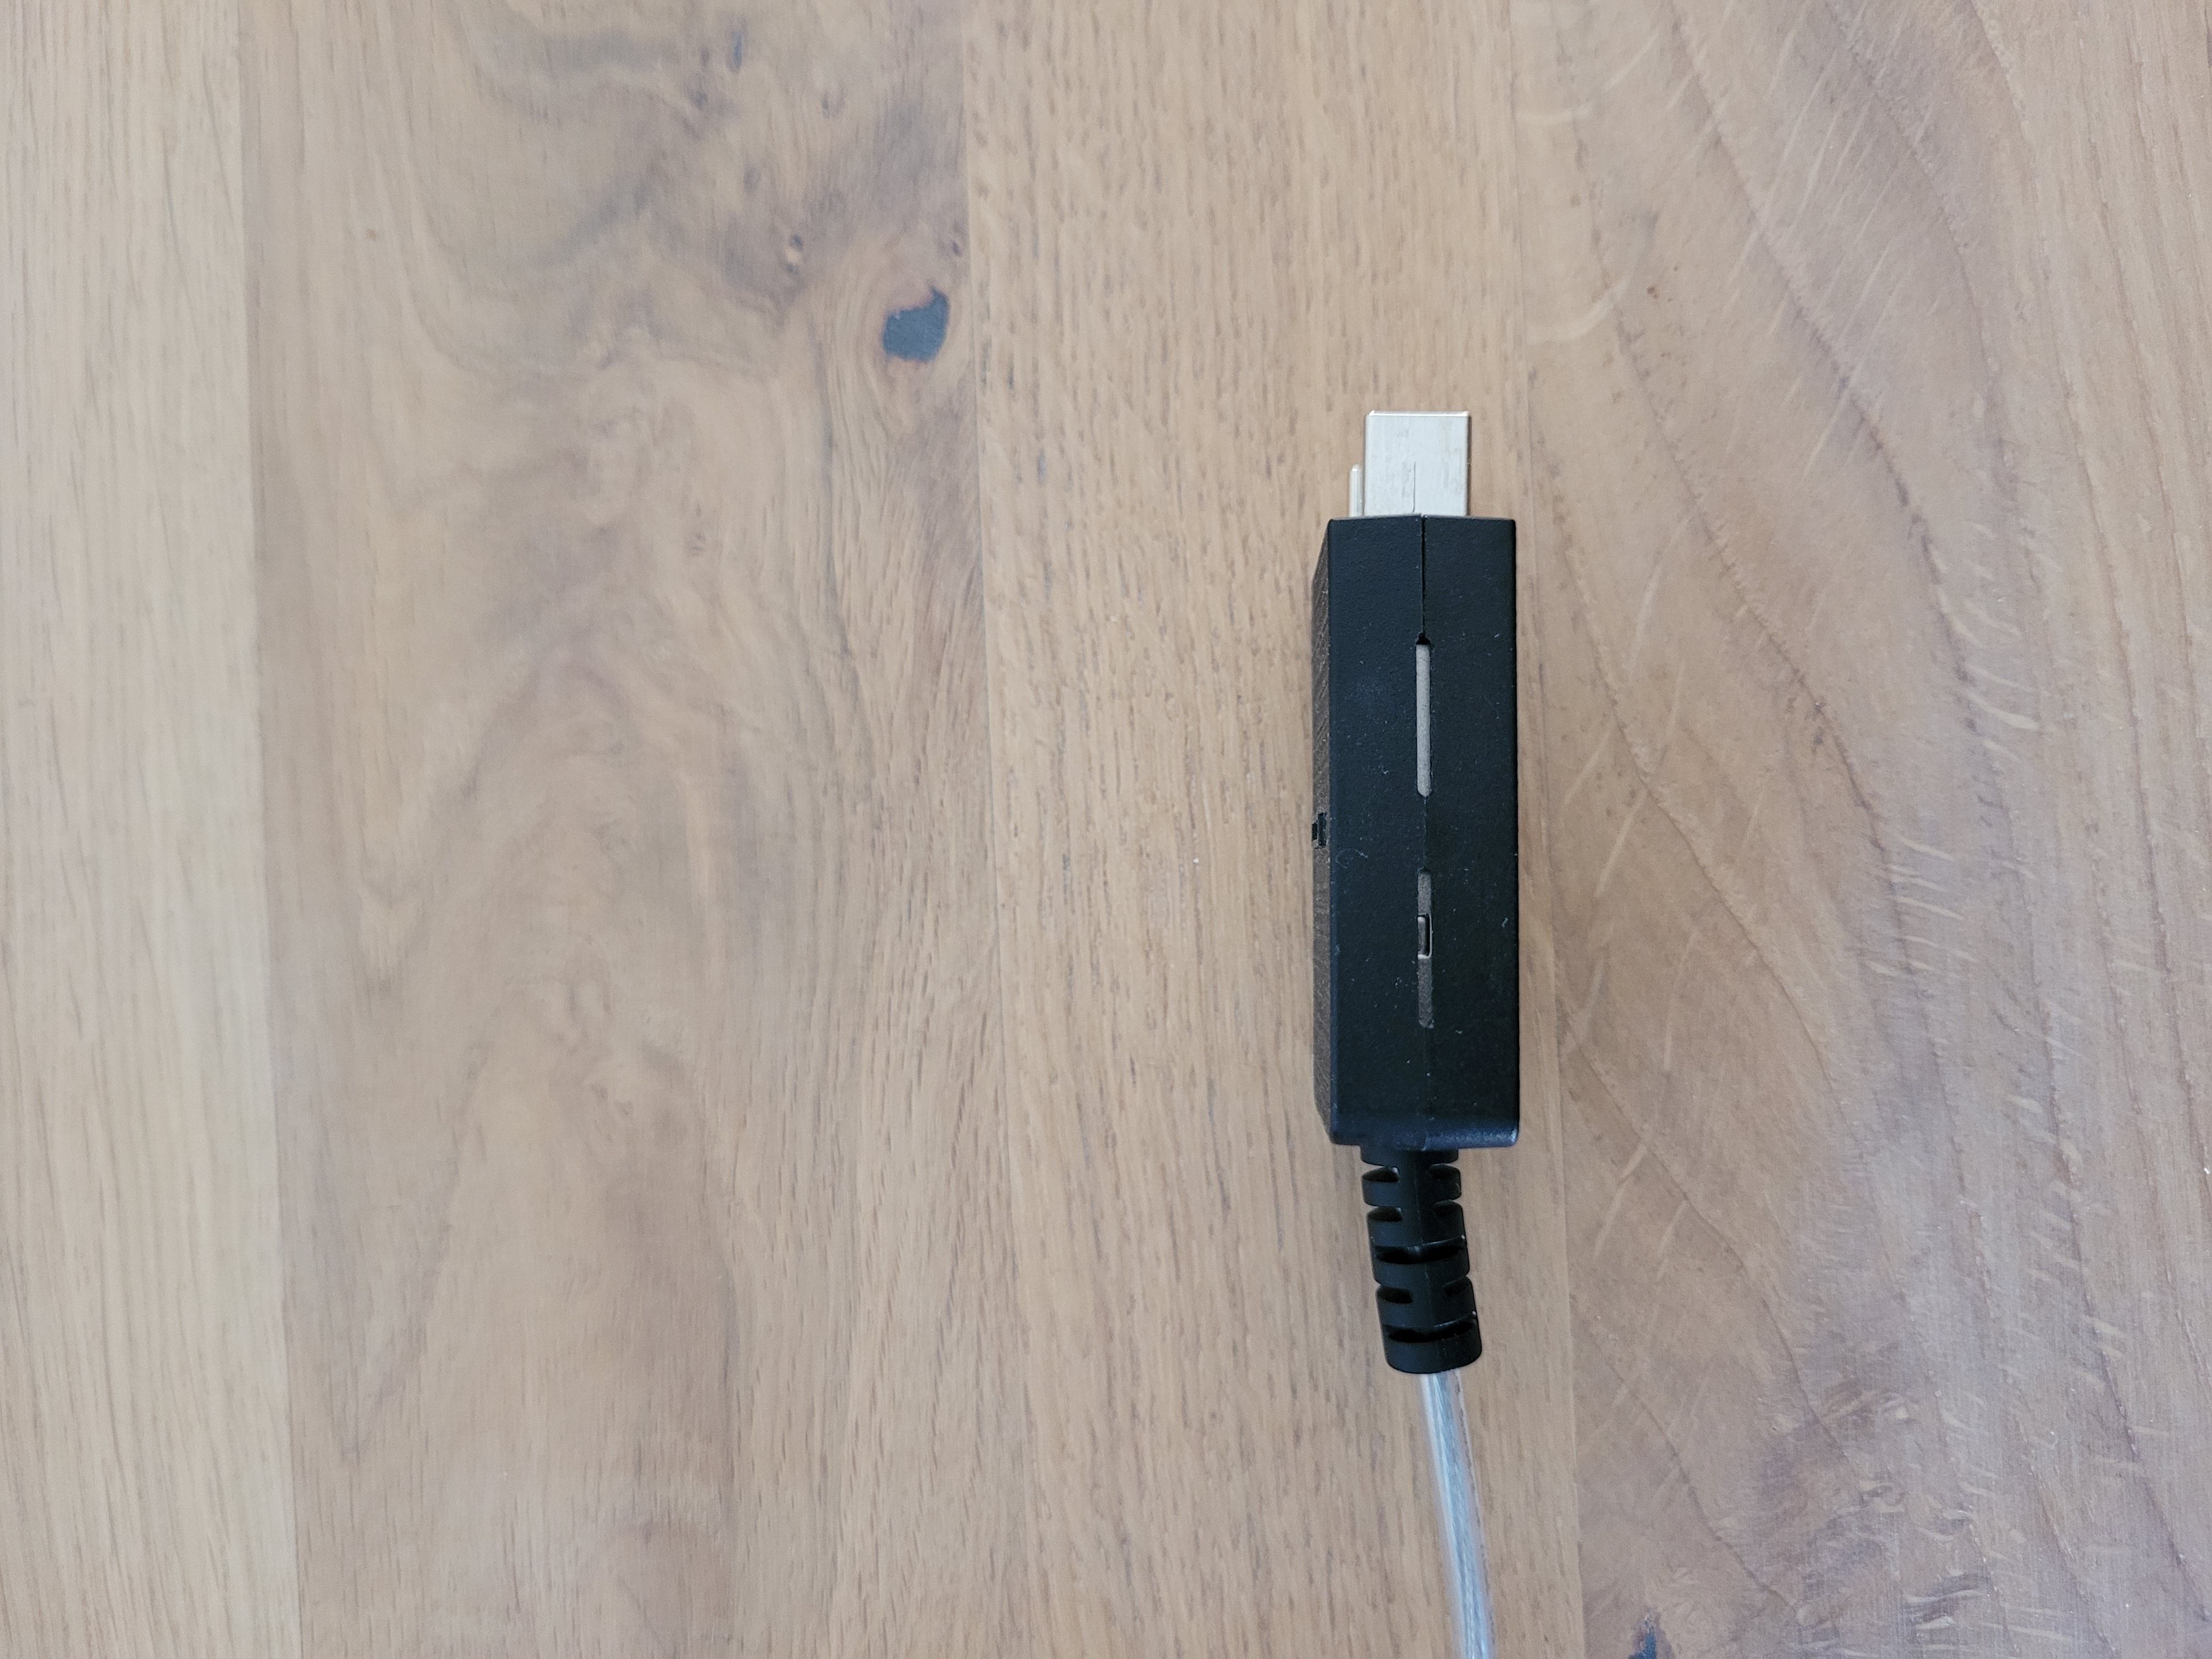 One connect cable kan wel door buis in de muur! - Samsung Community